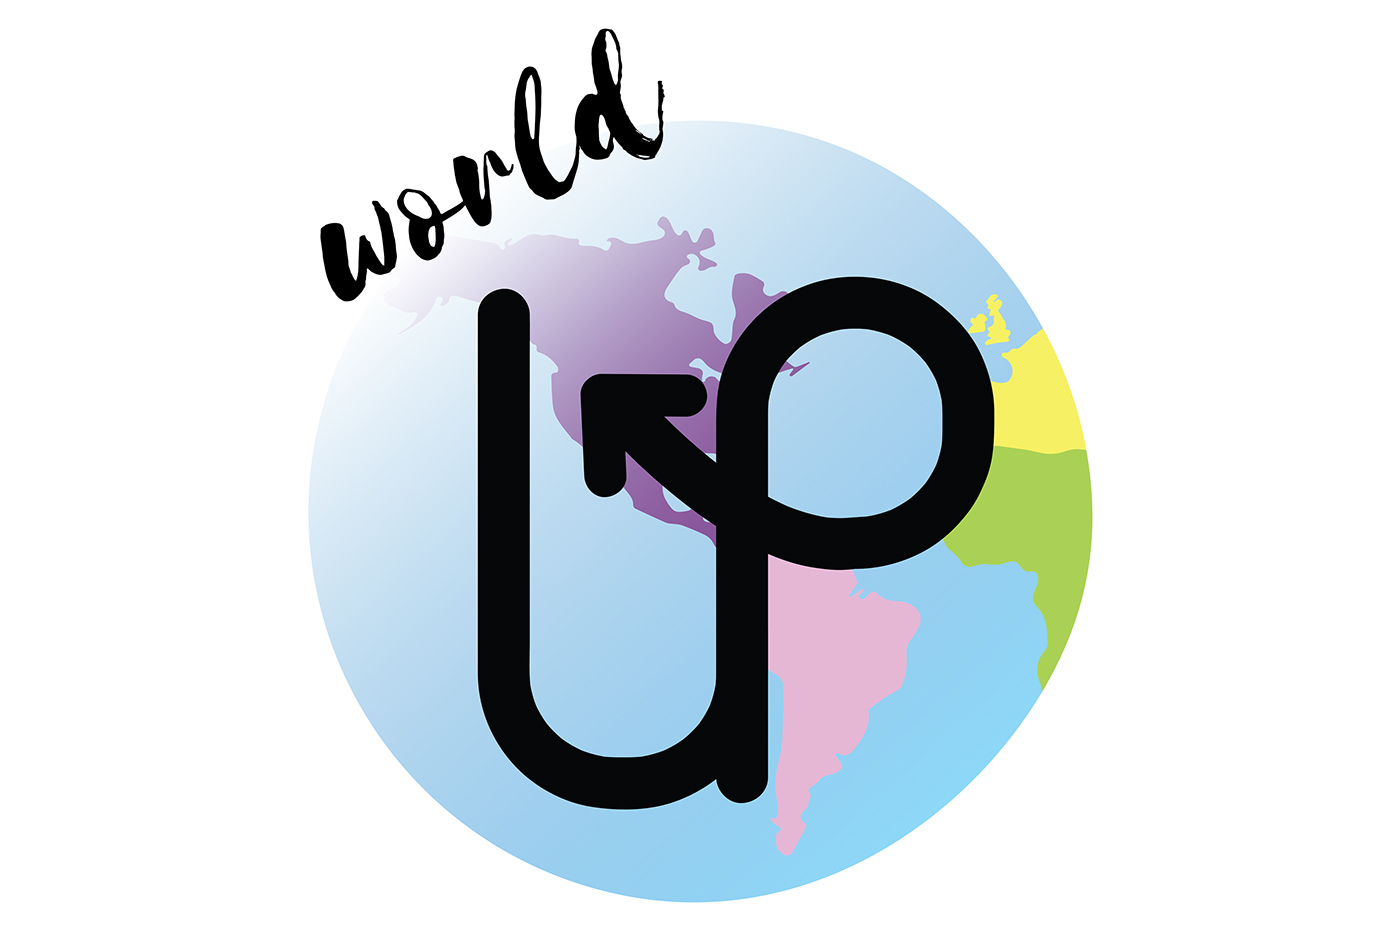 Ю ворлд. World of u. World up. P2p Foundation. Fotasho'p Fund.